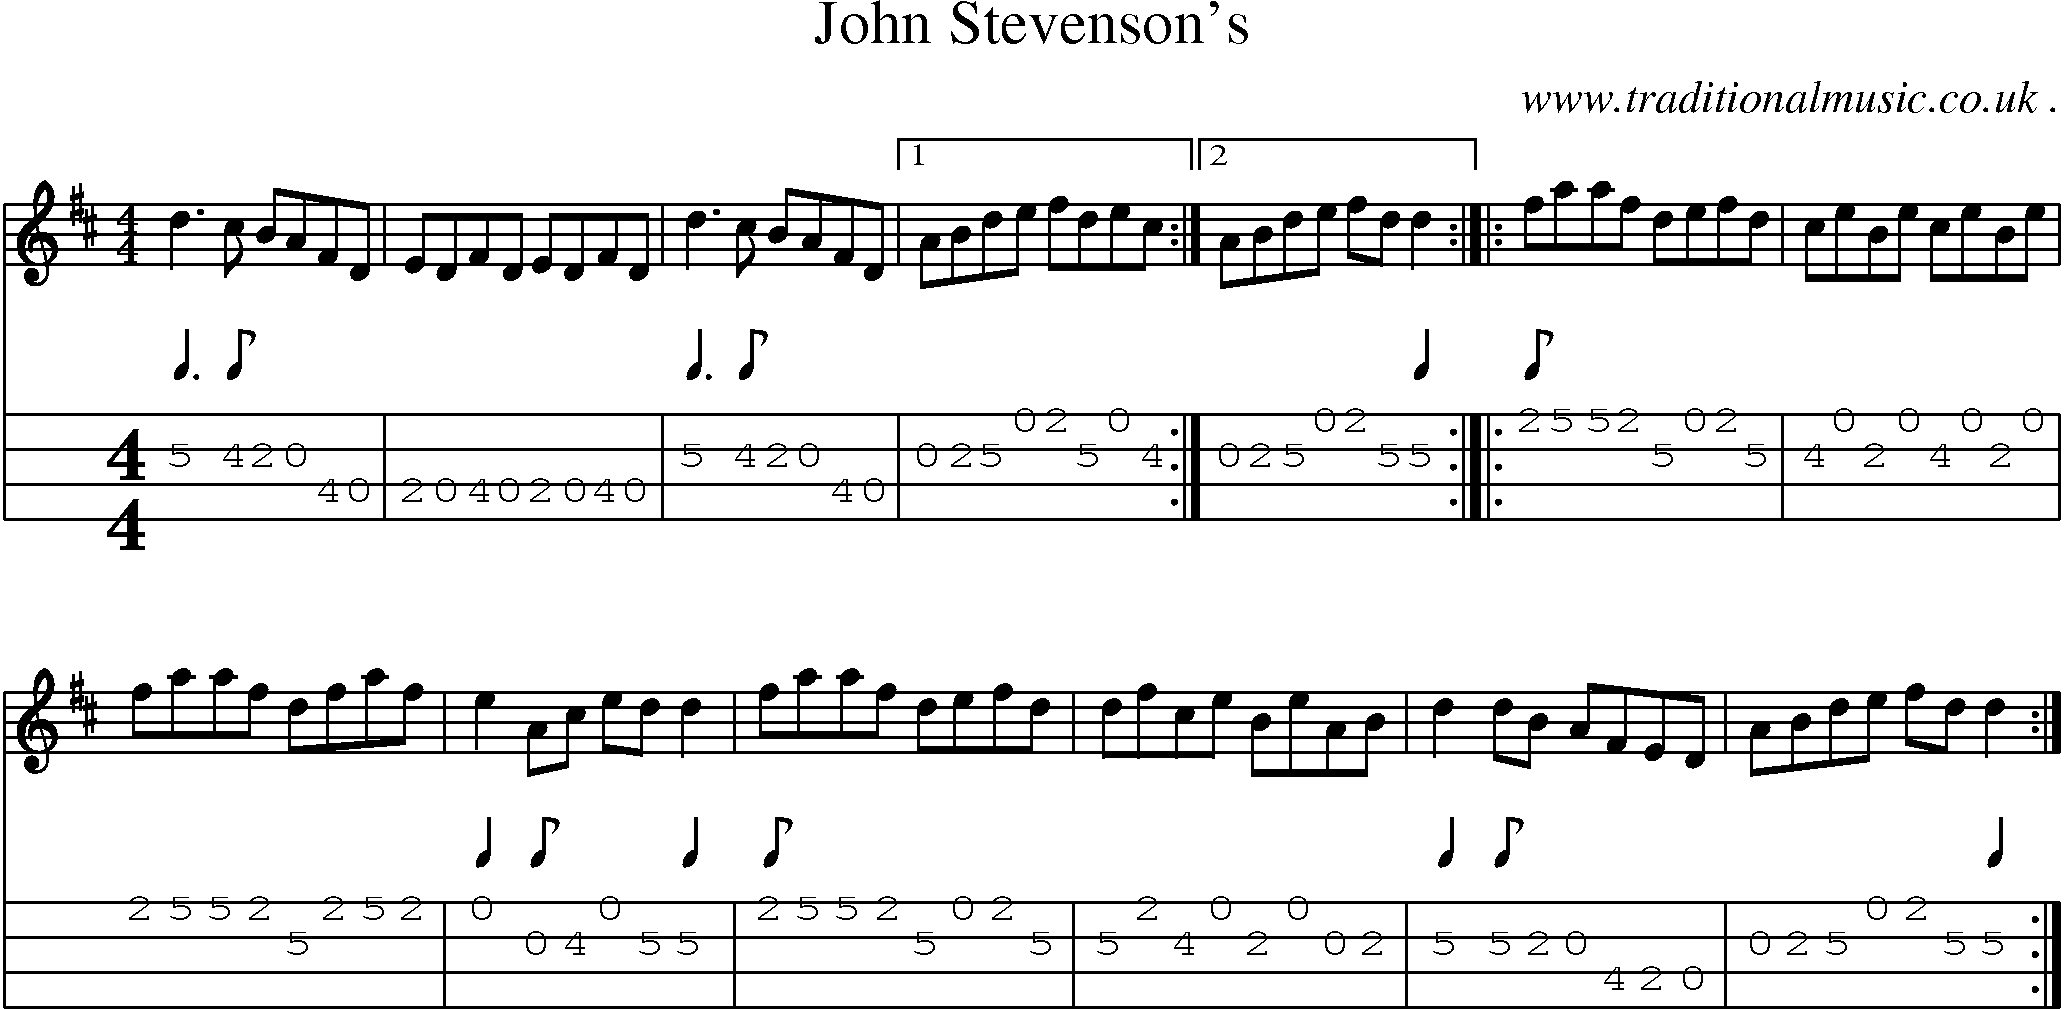 Sheet-Music and Mandolin Tabs for John Stevensons